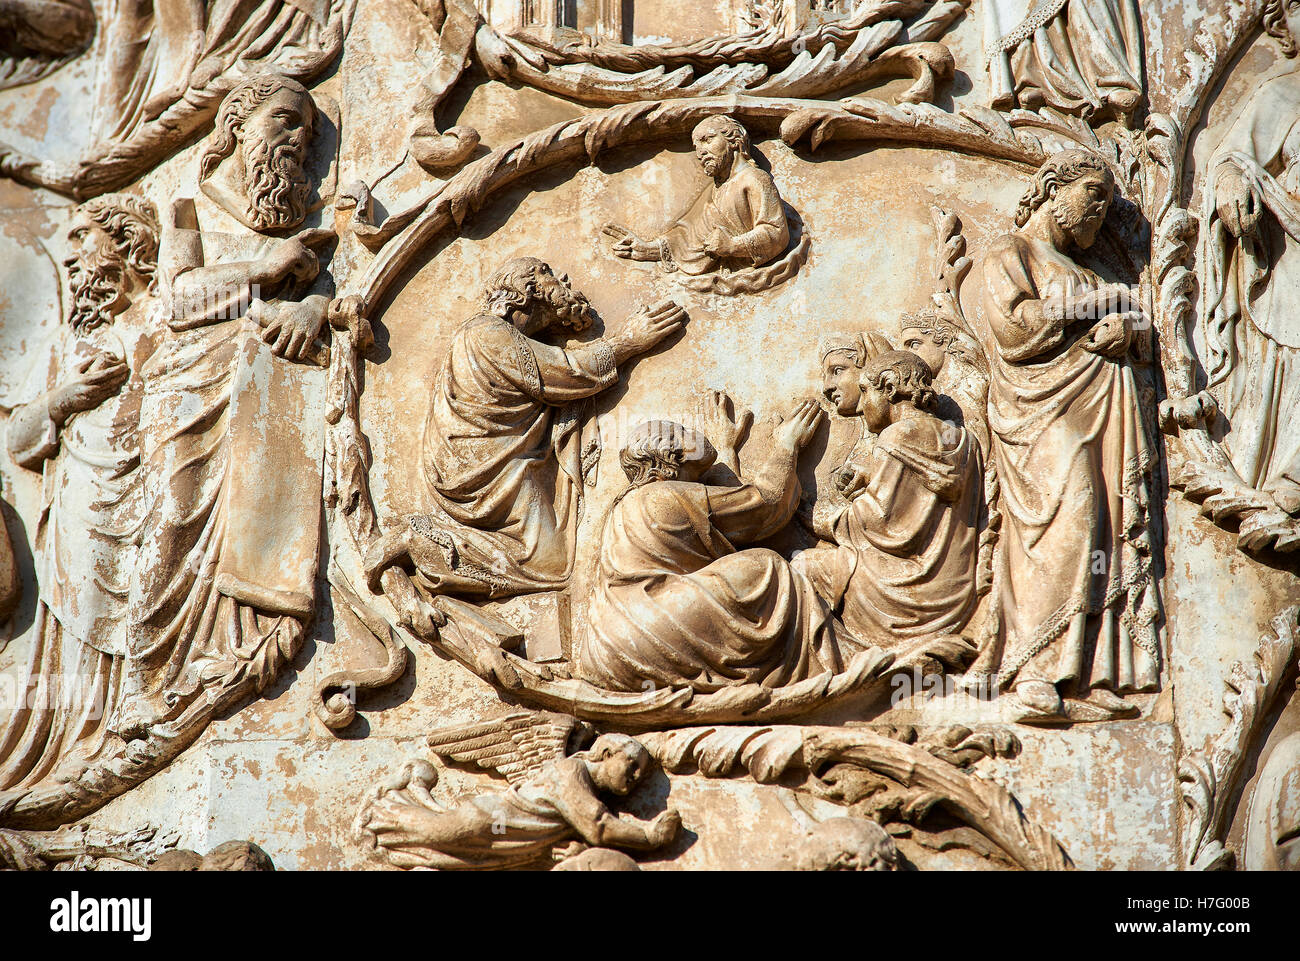 Sculpture bas-relief de bord de la Bible par Maitani circa1310, façade gothique toscan, Cathédrale d'Orvieto, Ombrie, Italie Banque D'Images